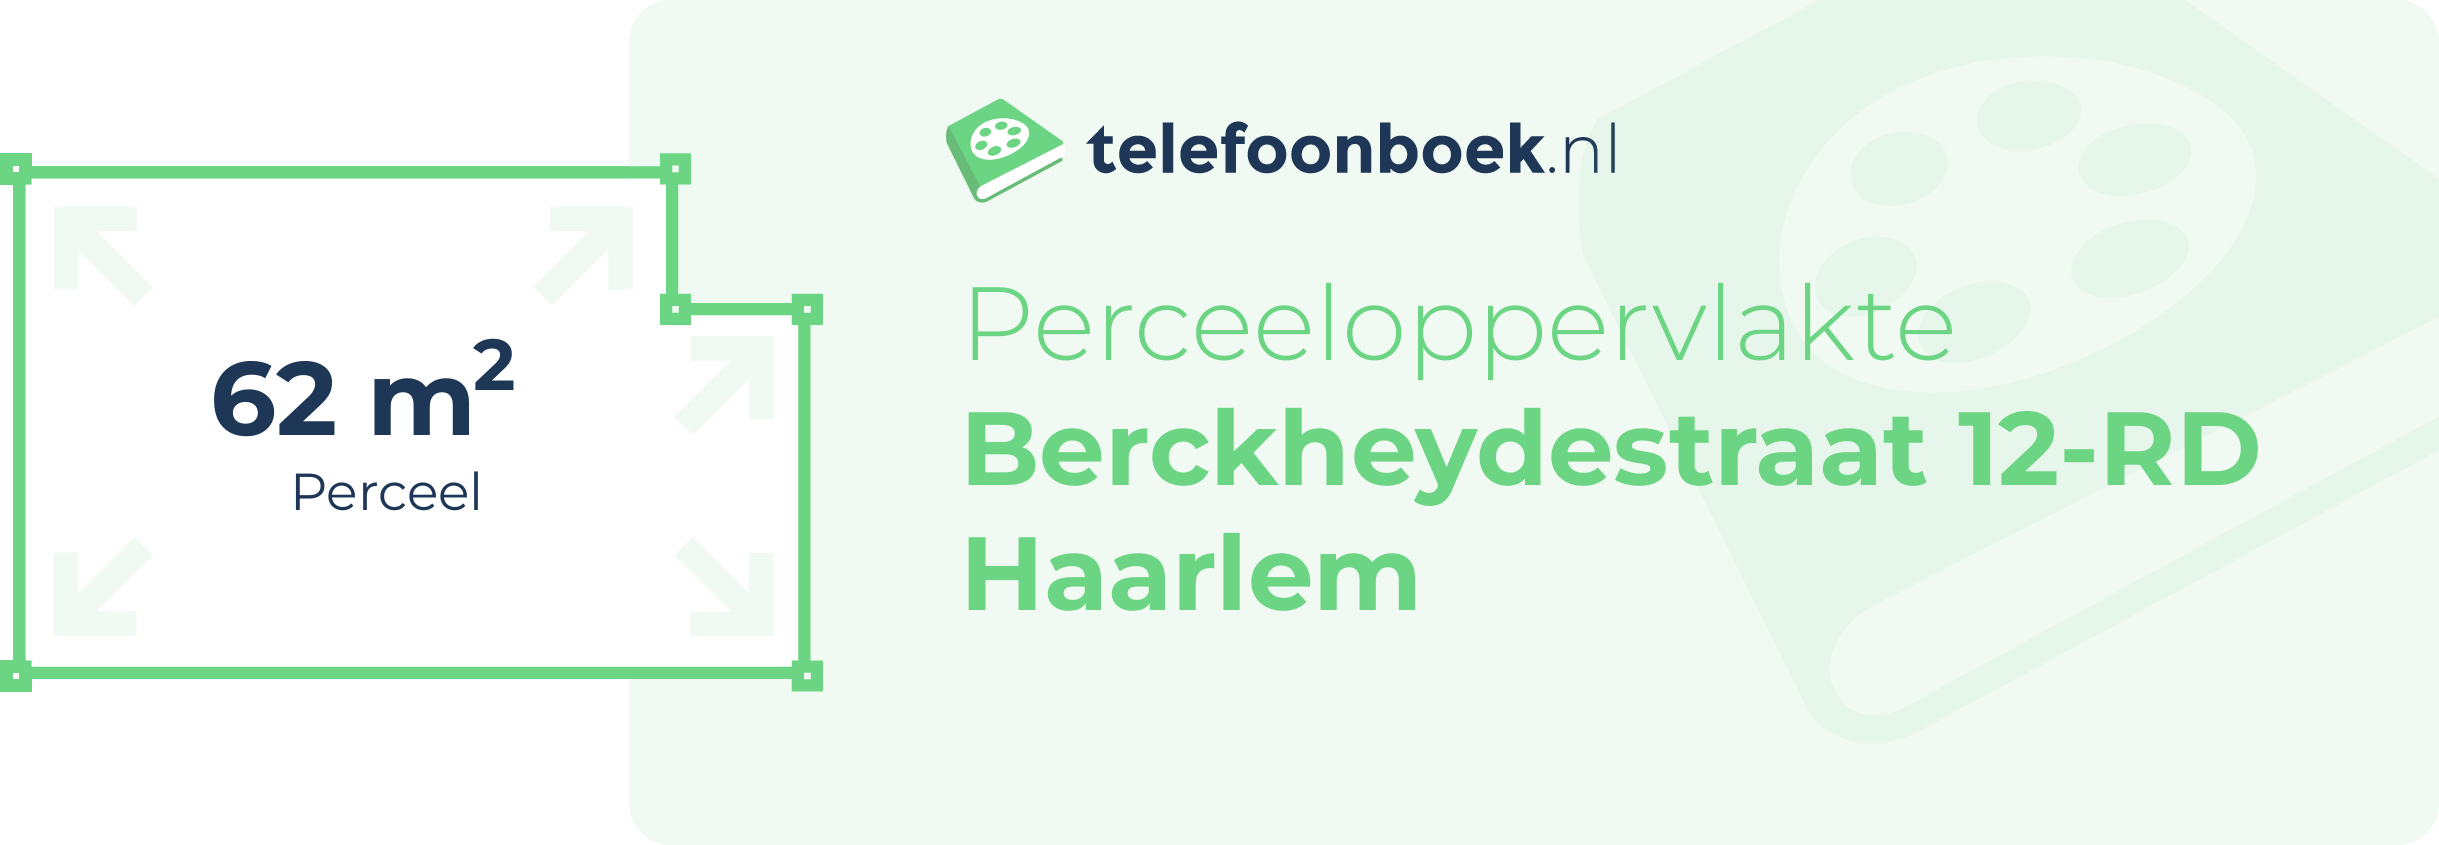 Perceeloppervlakte Berckheydestraat 12-RD Haarlem